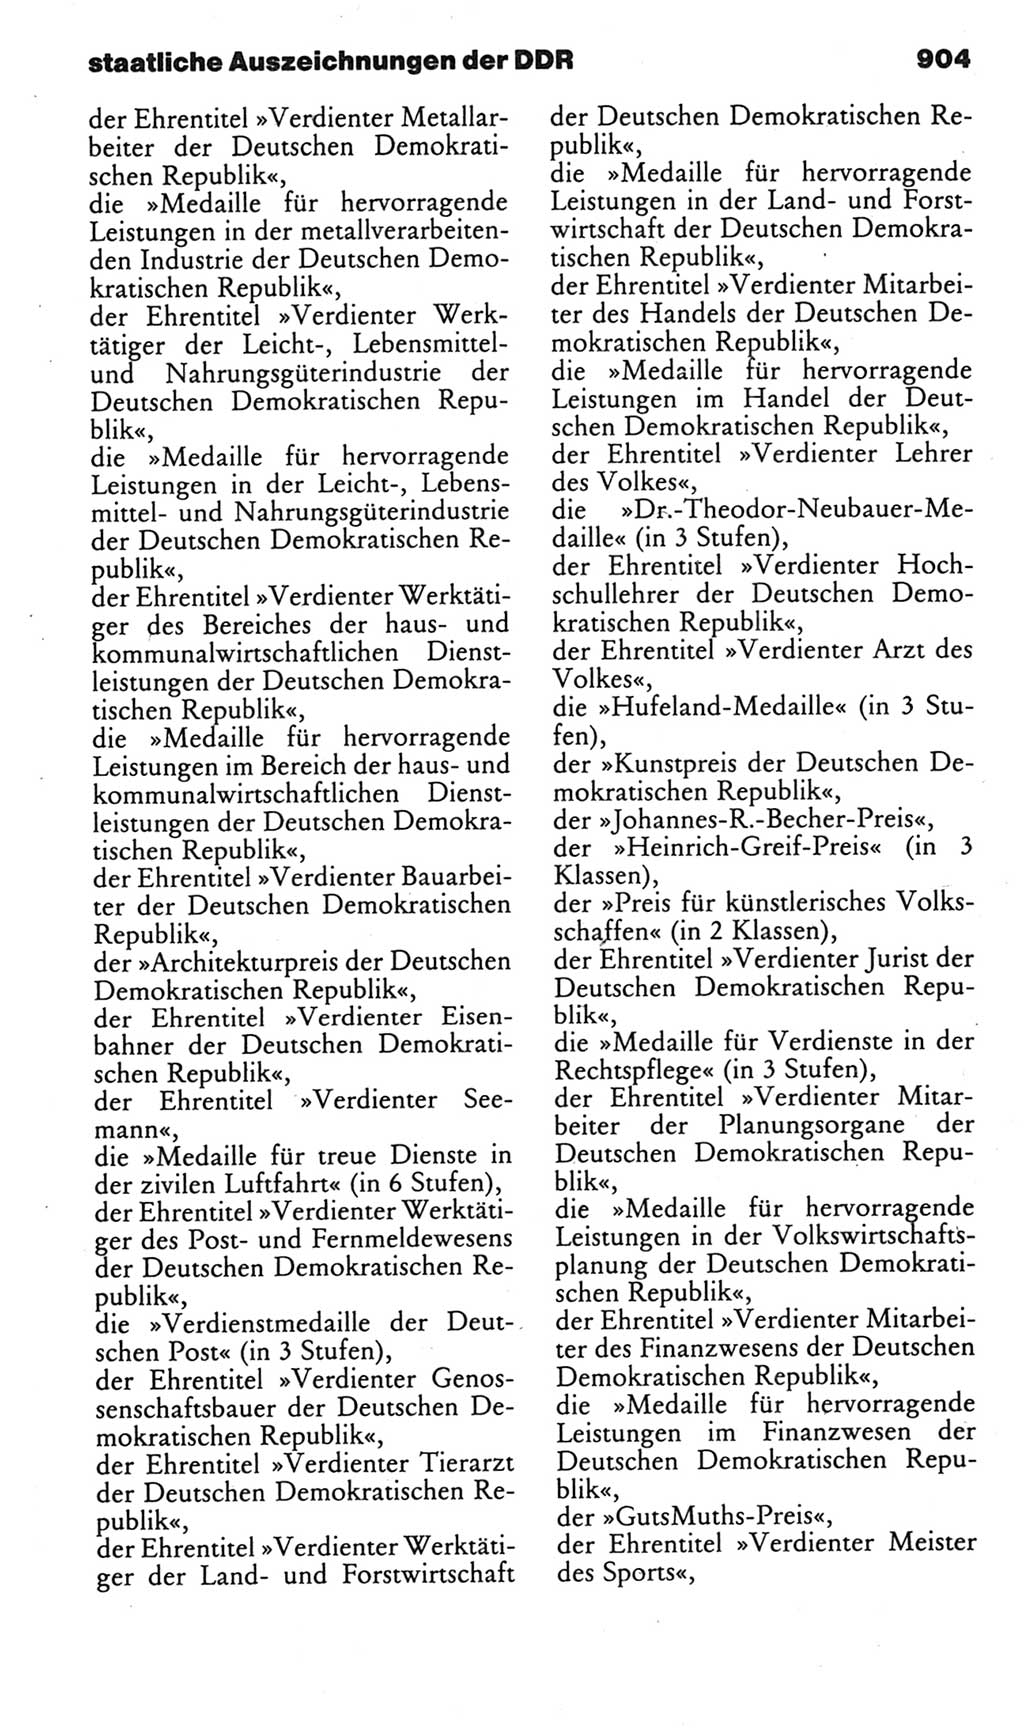 Kleines politisches Wörterbuch [Deutsche Demokratische Republik (DDR)] 1985, Seite 904 (Kl. pol. Wb. DDR 1985, S. 904)